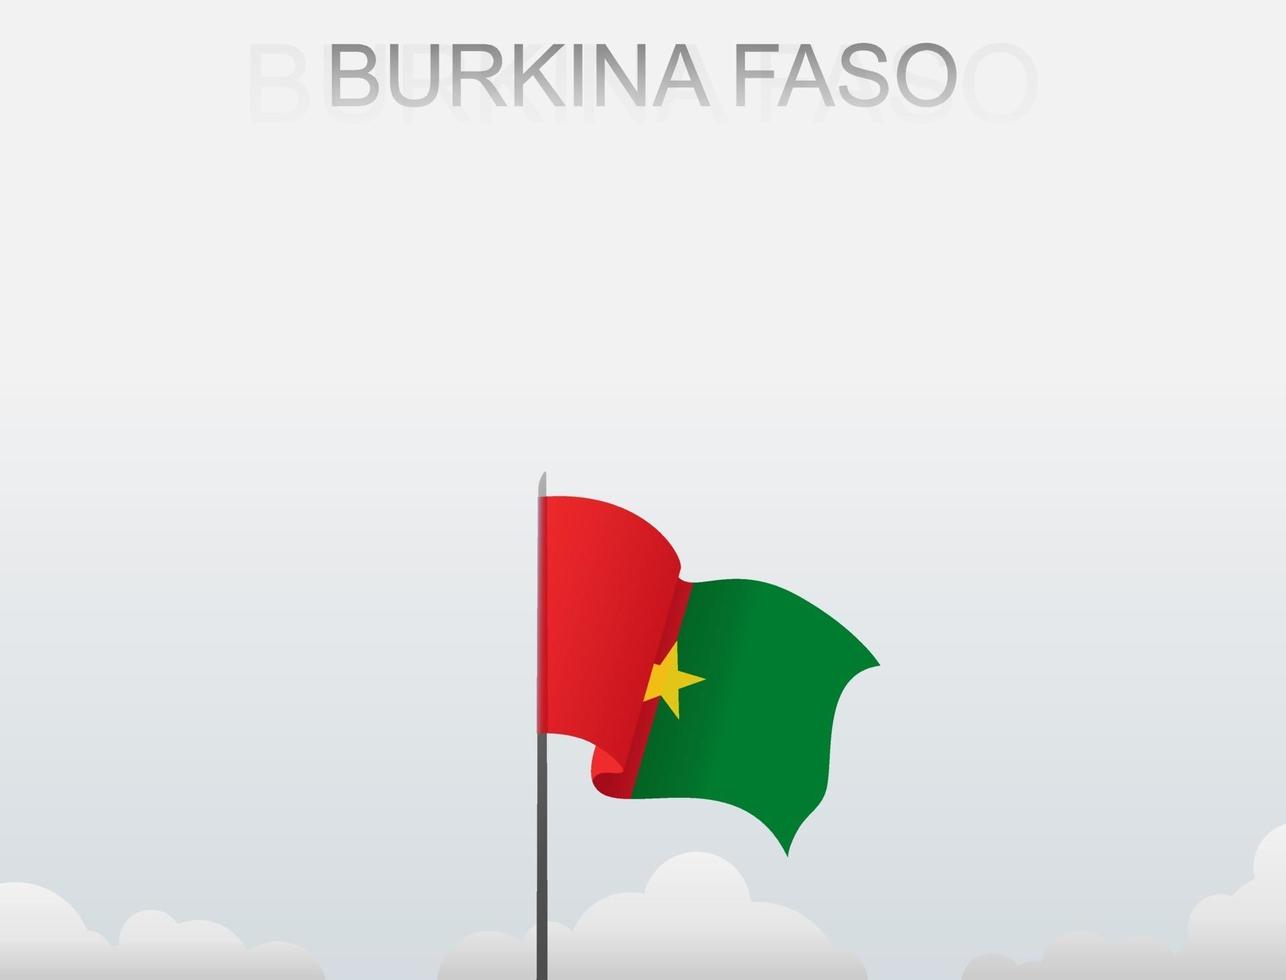 burkina faso -flaggan flyger på en stolpe som står högt under den vita himlen vektor